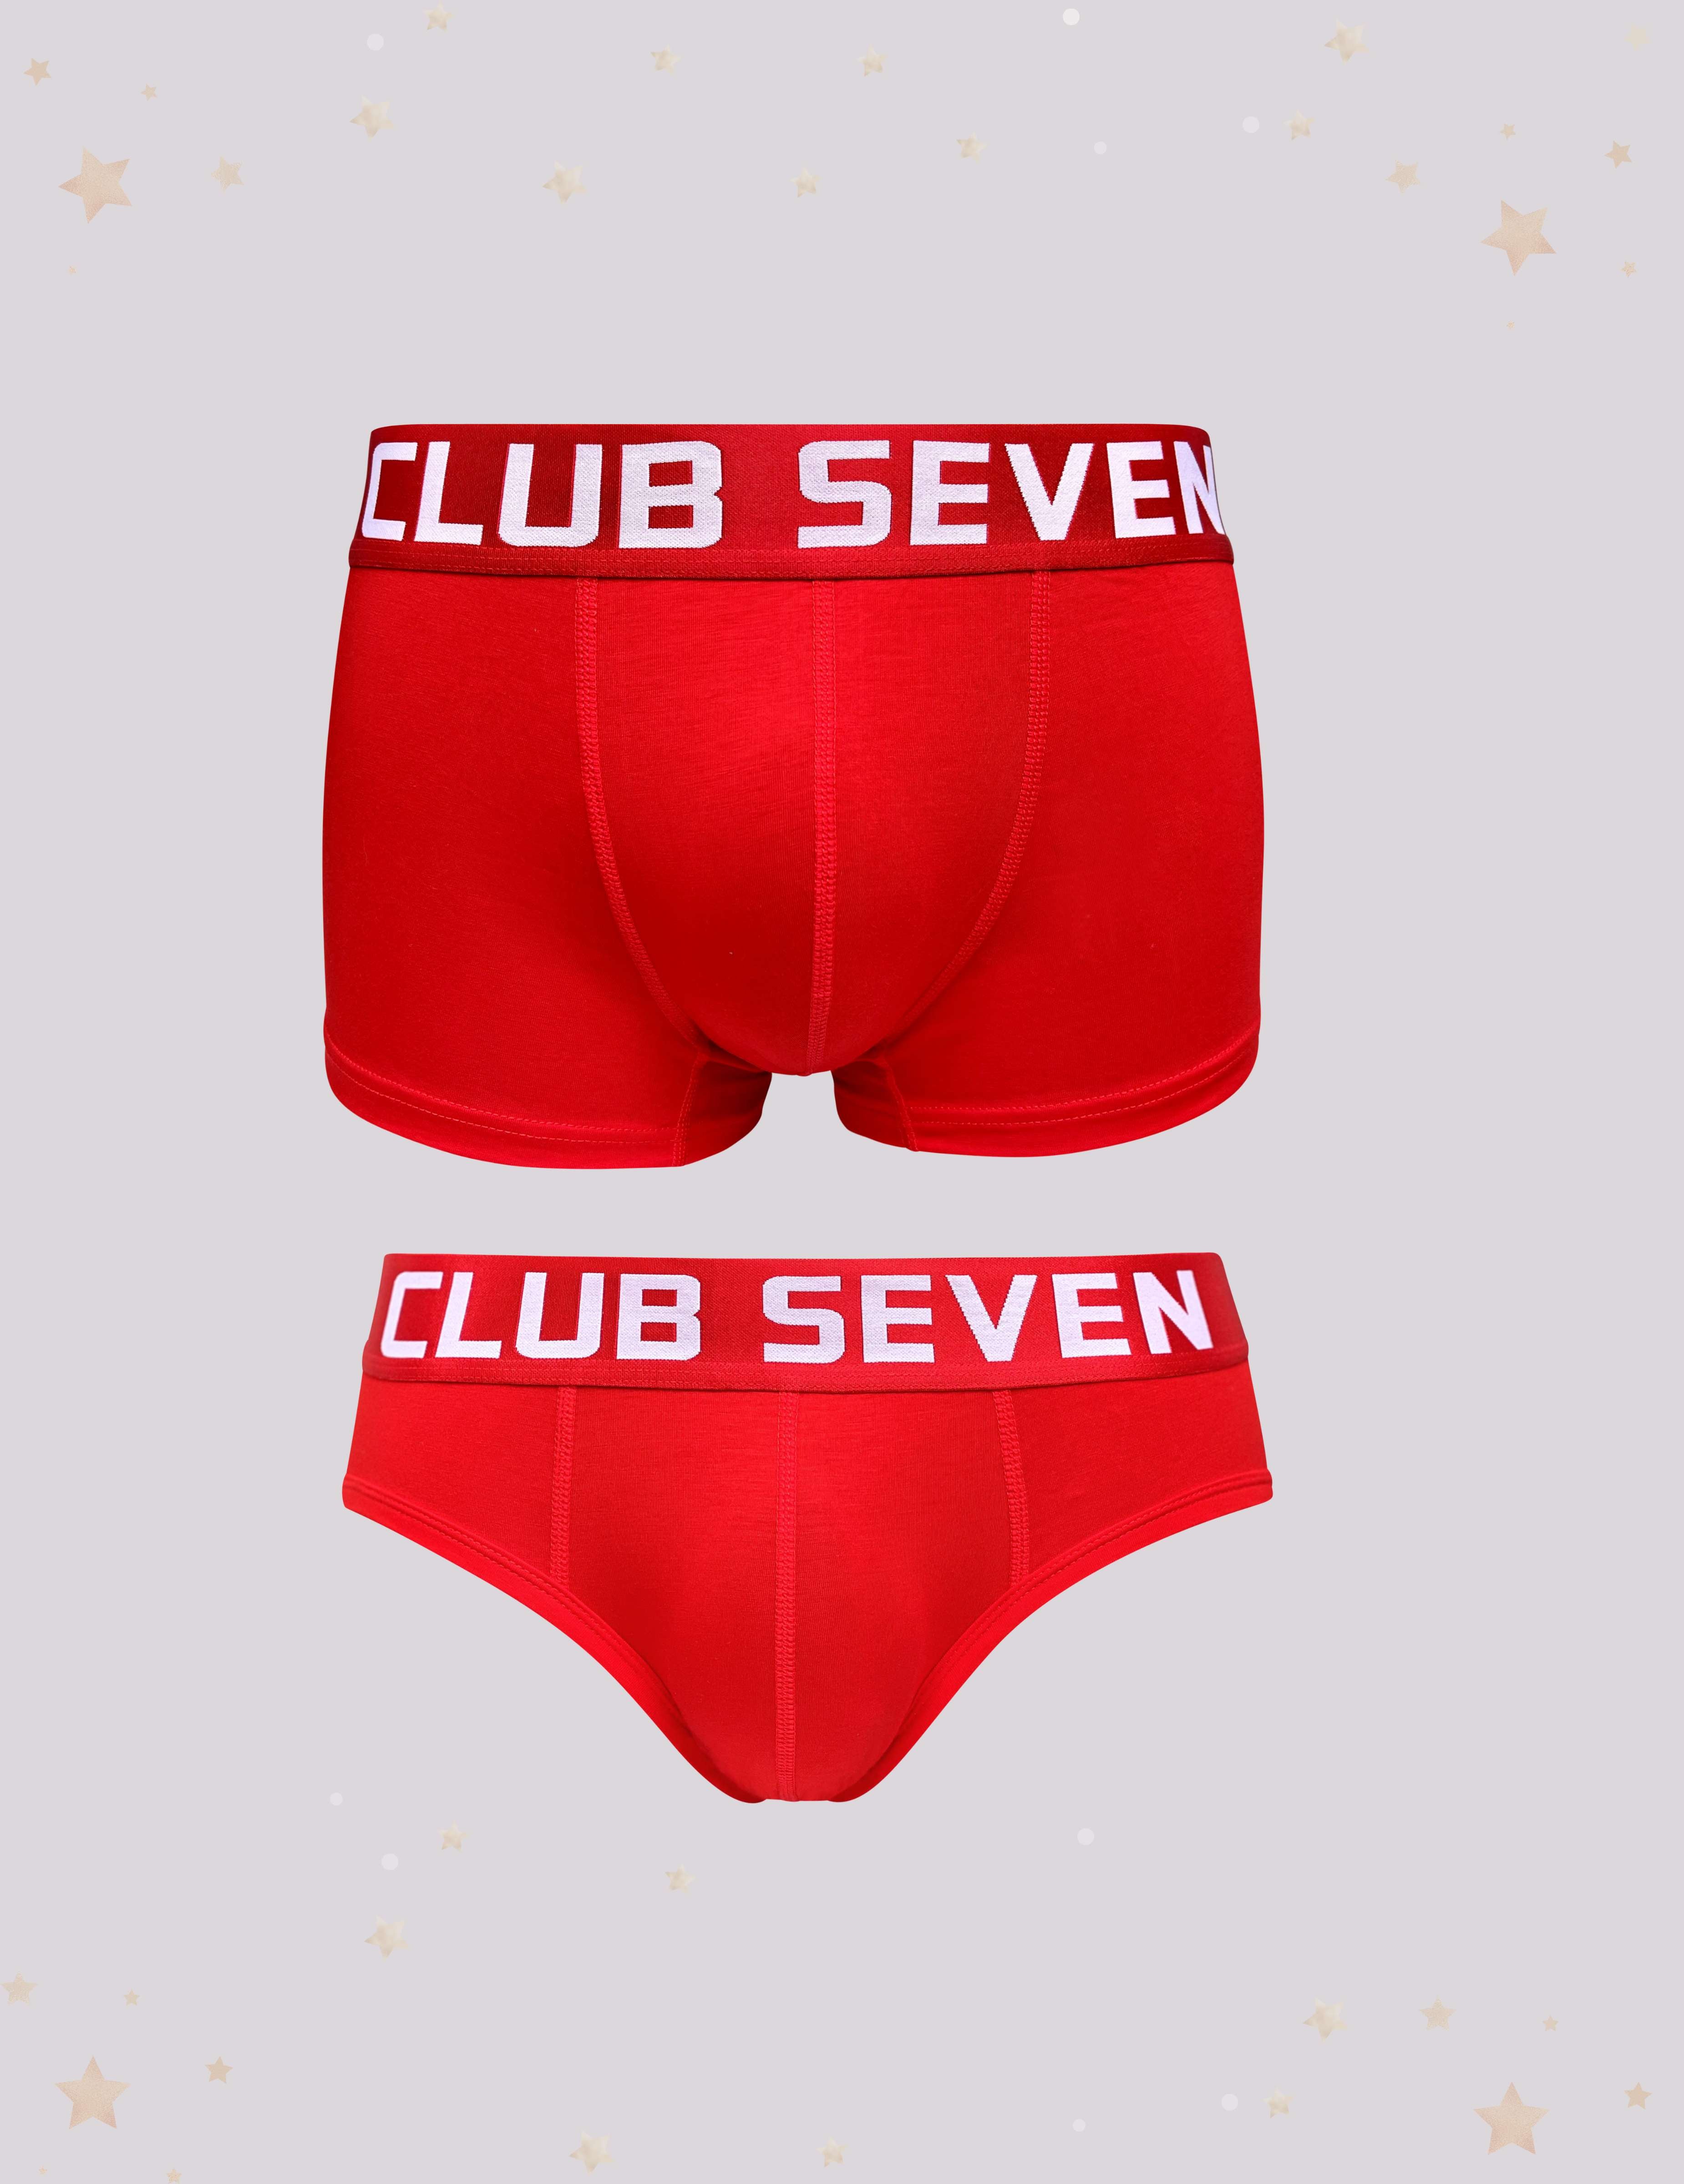 BVLGE Menswear - Australian Mens Underwear Store